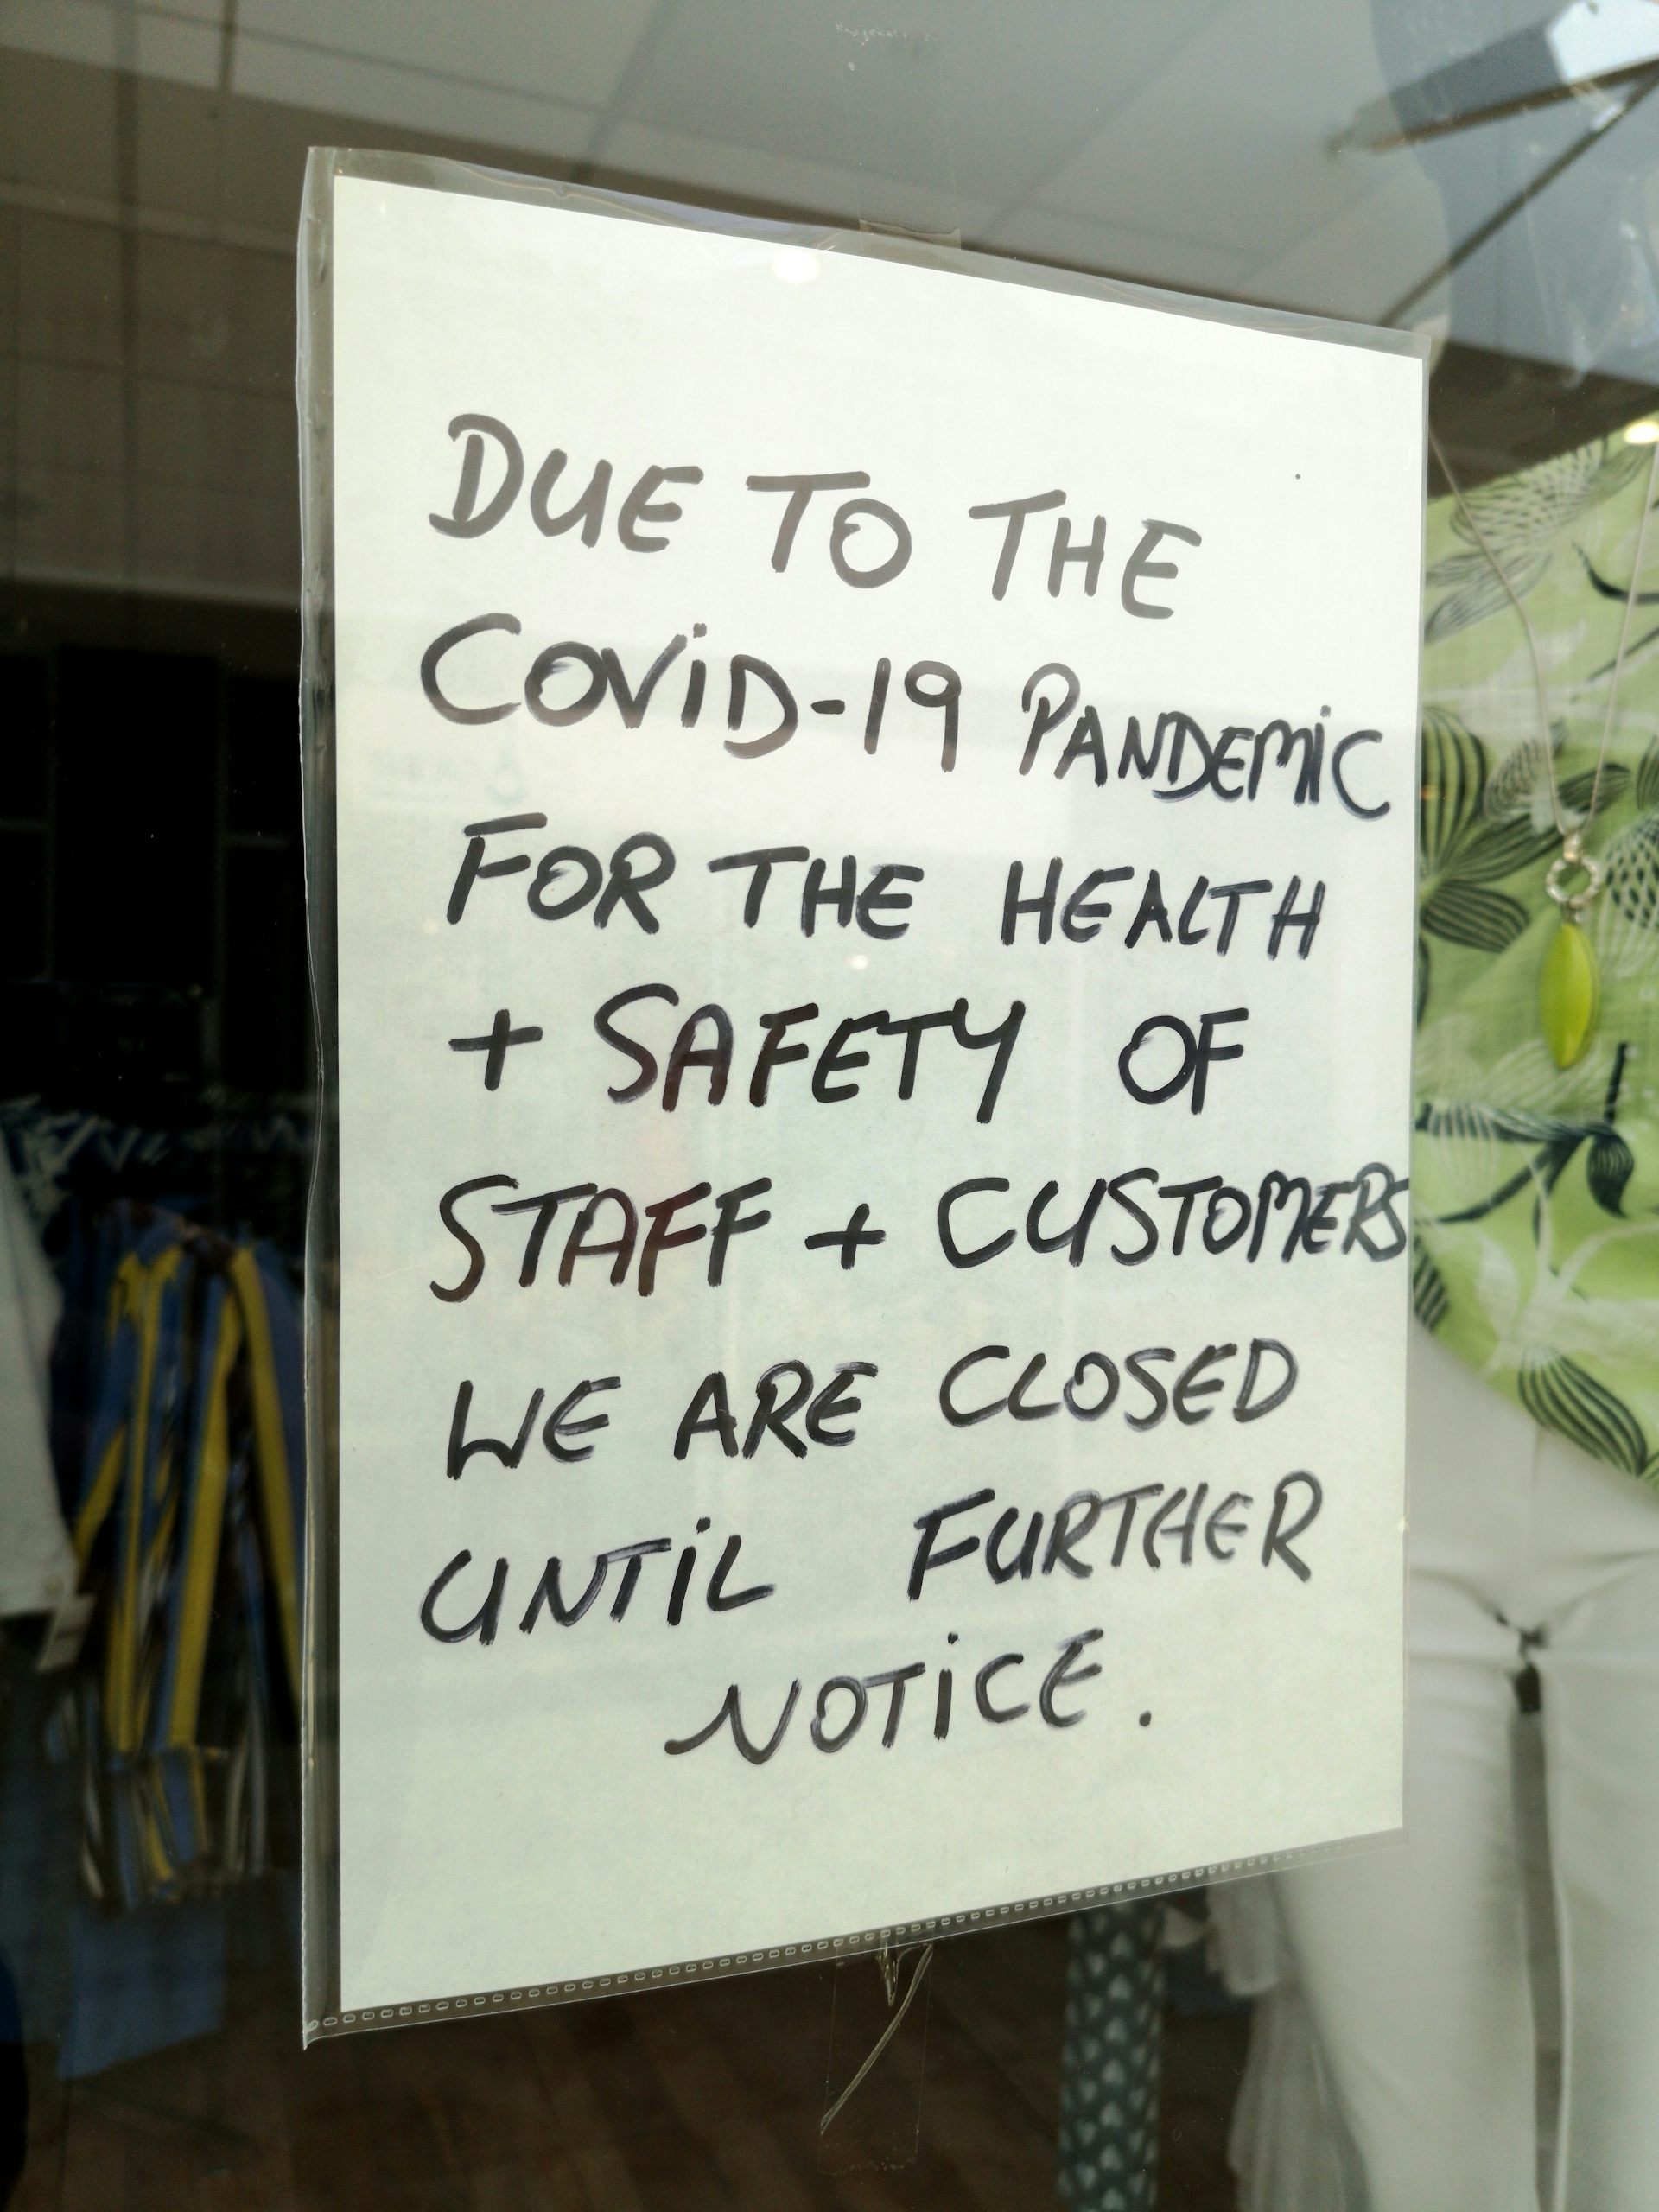 Znak w witrynie sklepowej informujący, że sklep jest zamknięty do odwołania z powodu COVID-19